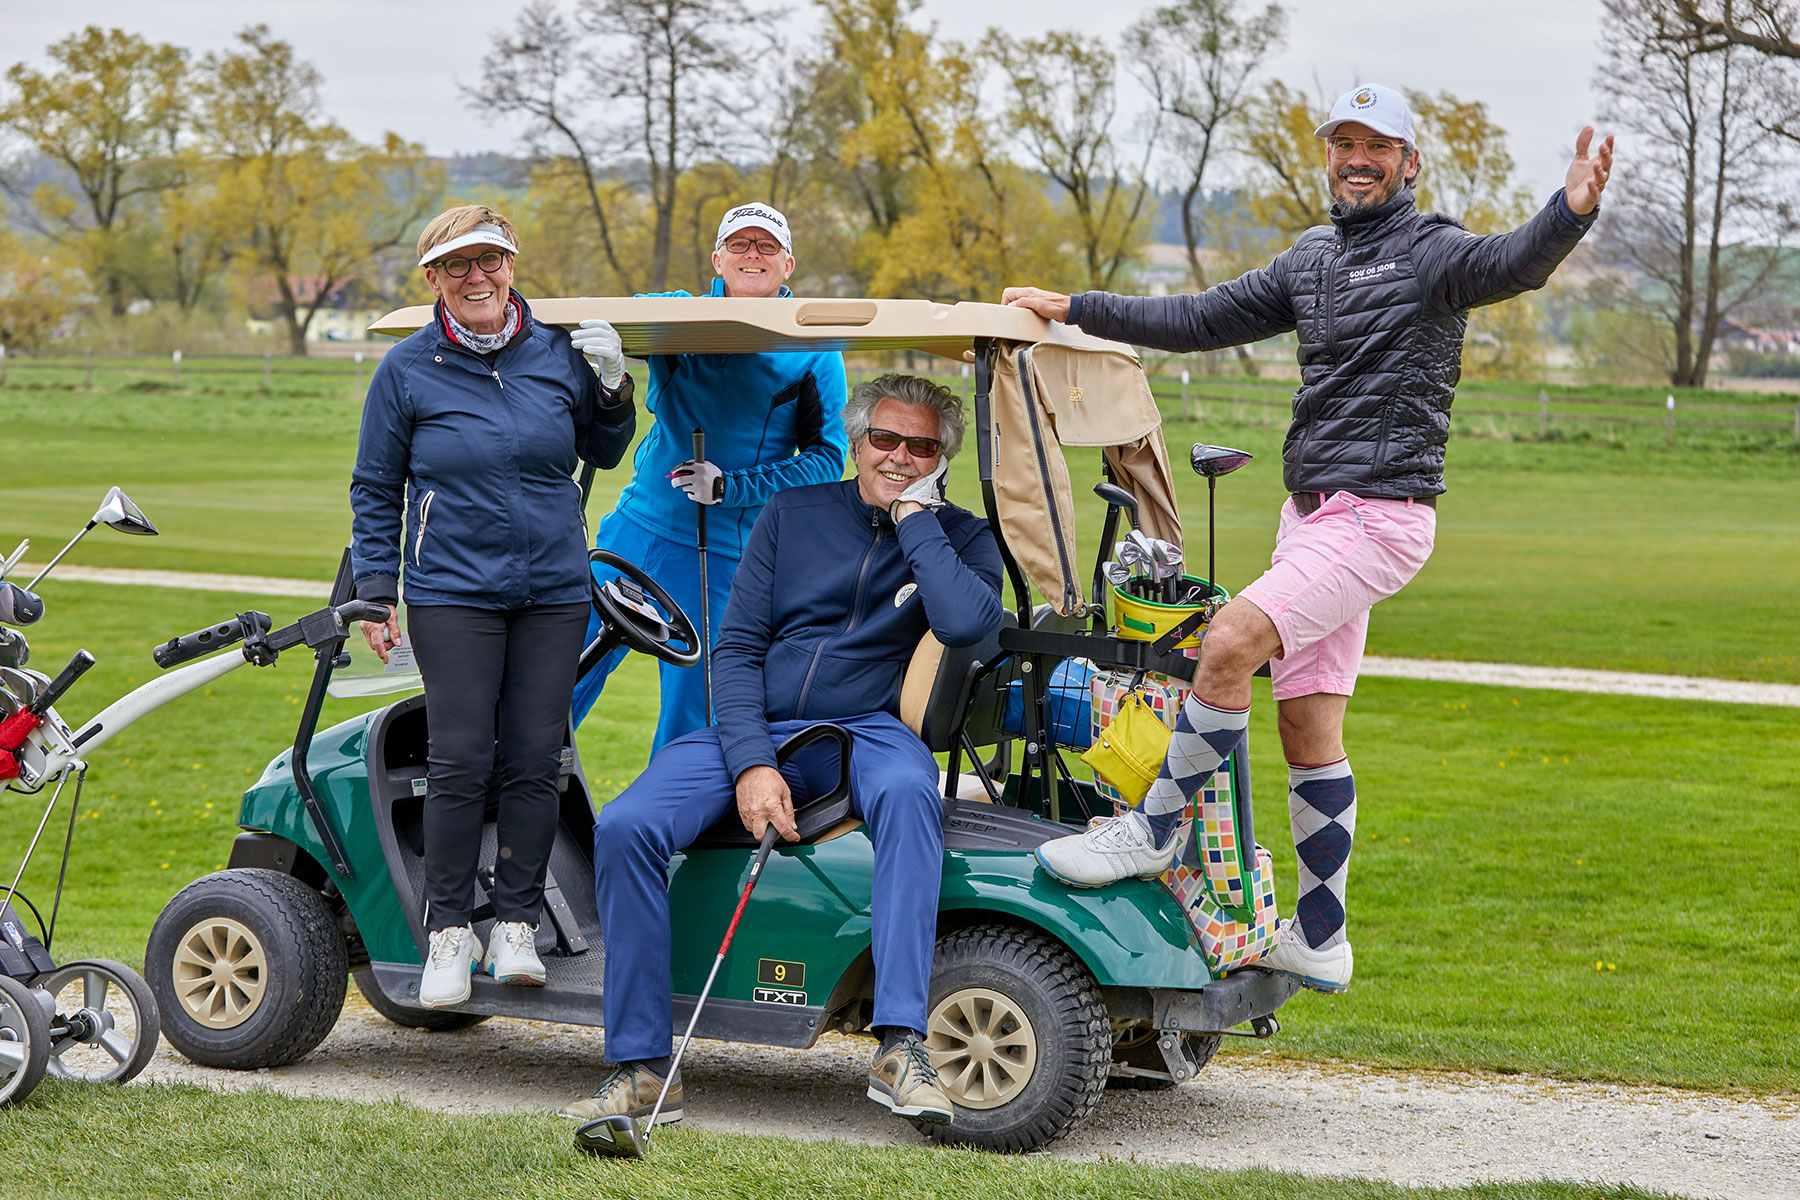 Viel Spaß hatten die Golfer bei ihrem Saisonstart auf dem Beckenbauer Golf Course.